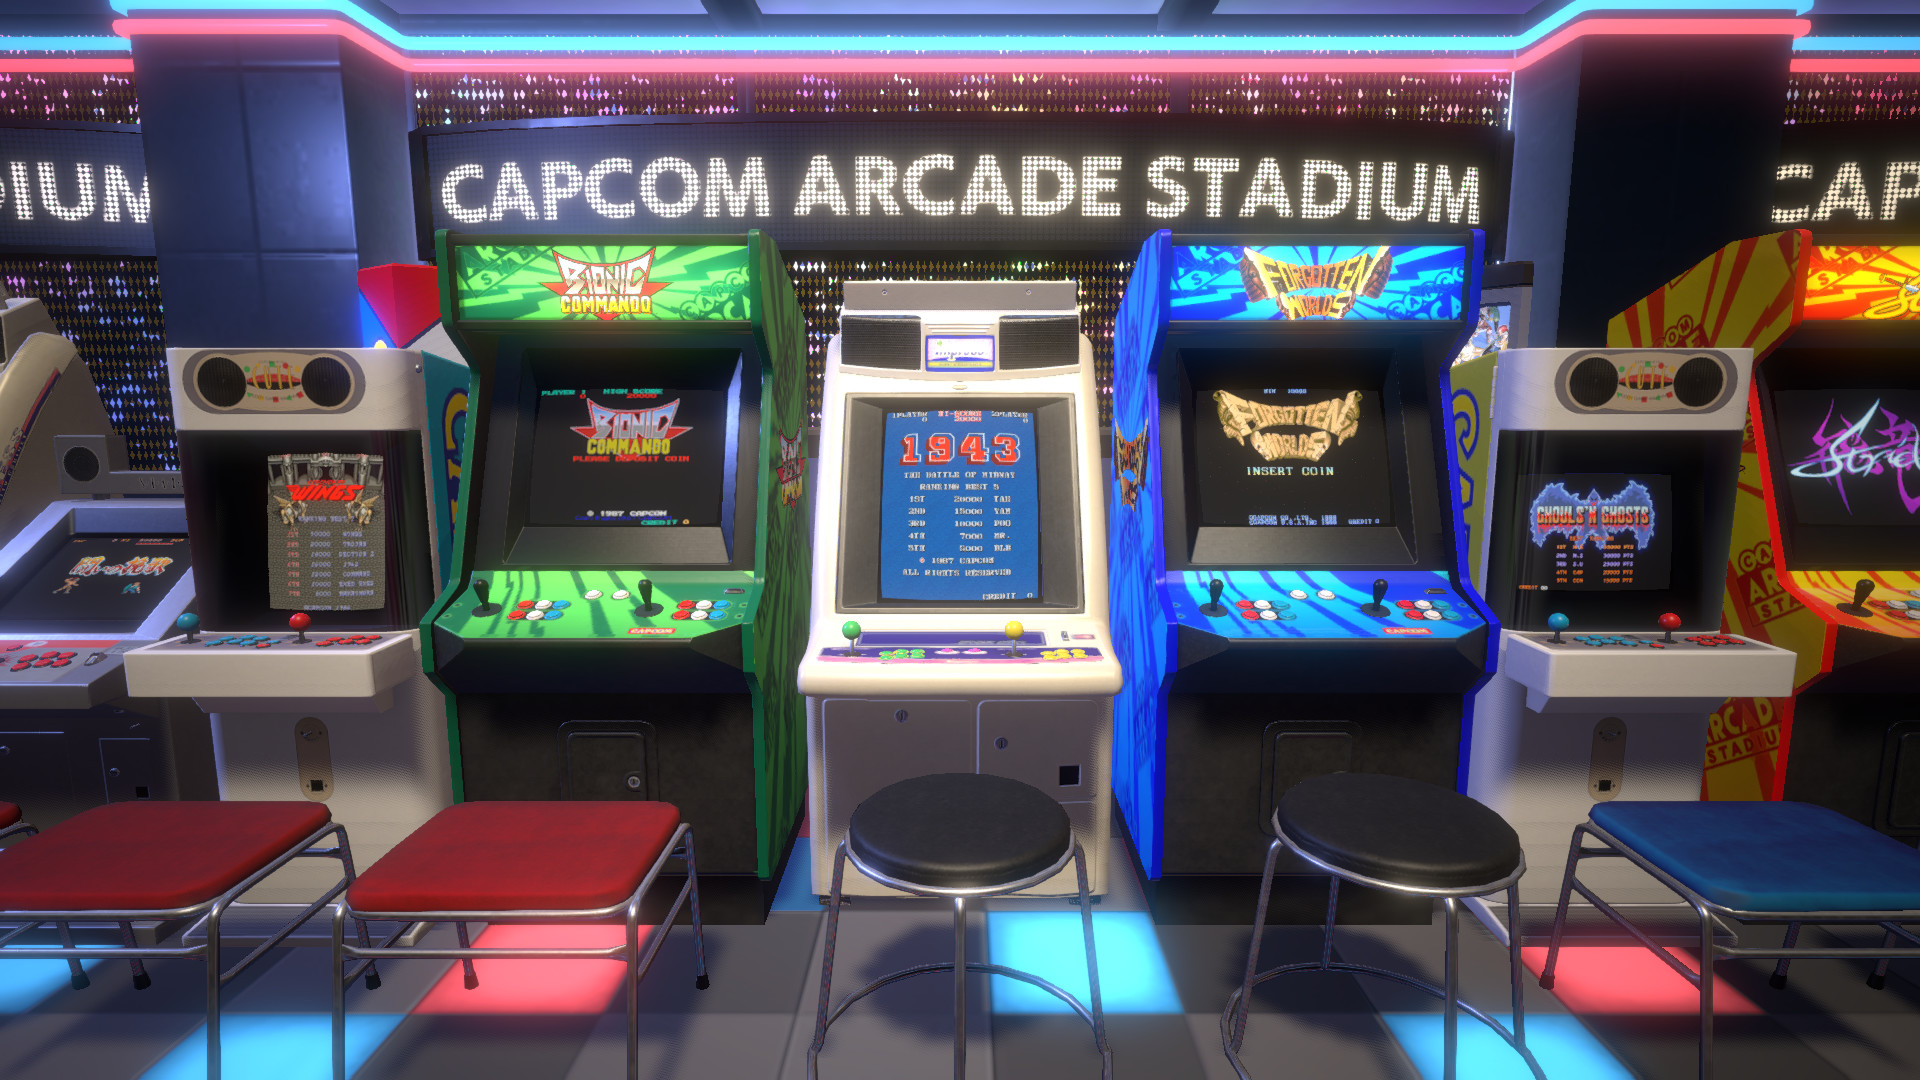 אוסף אמולציית הארקייד של Capcom הוא משחק Steam השמיני בגודלו בכל הזמנים